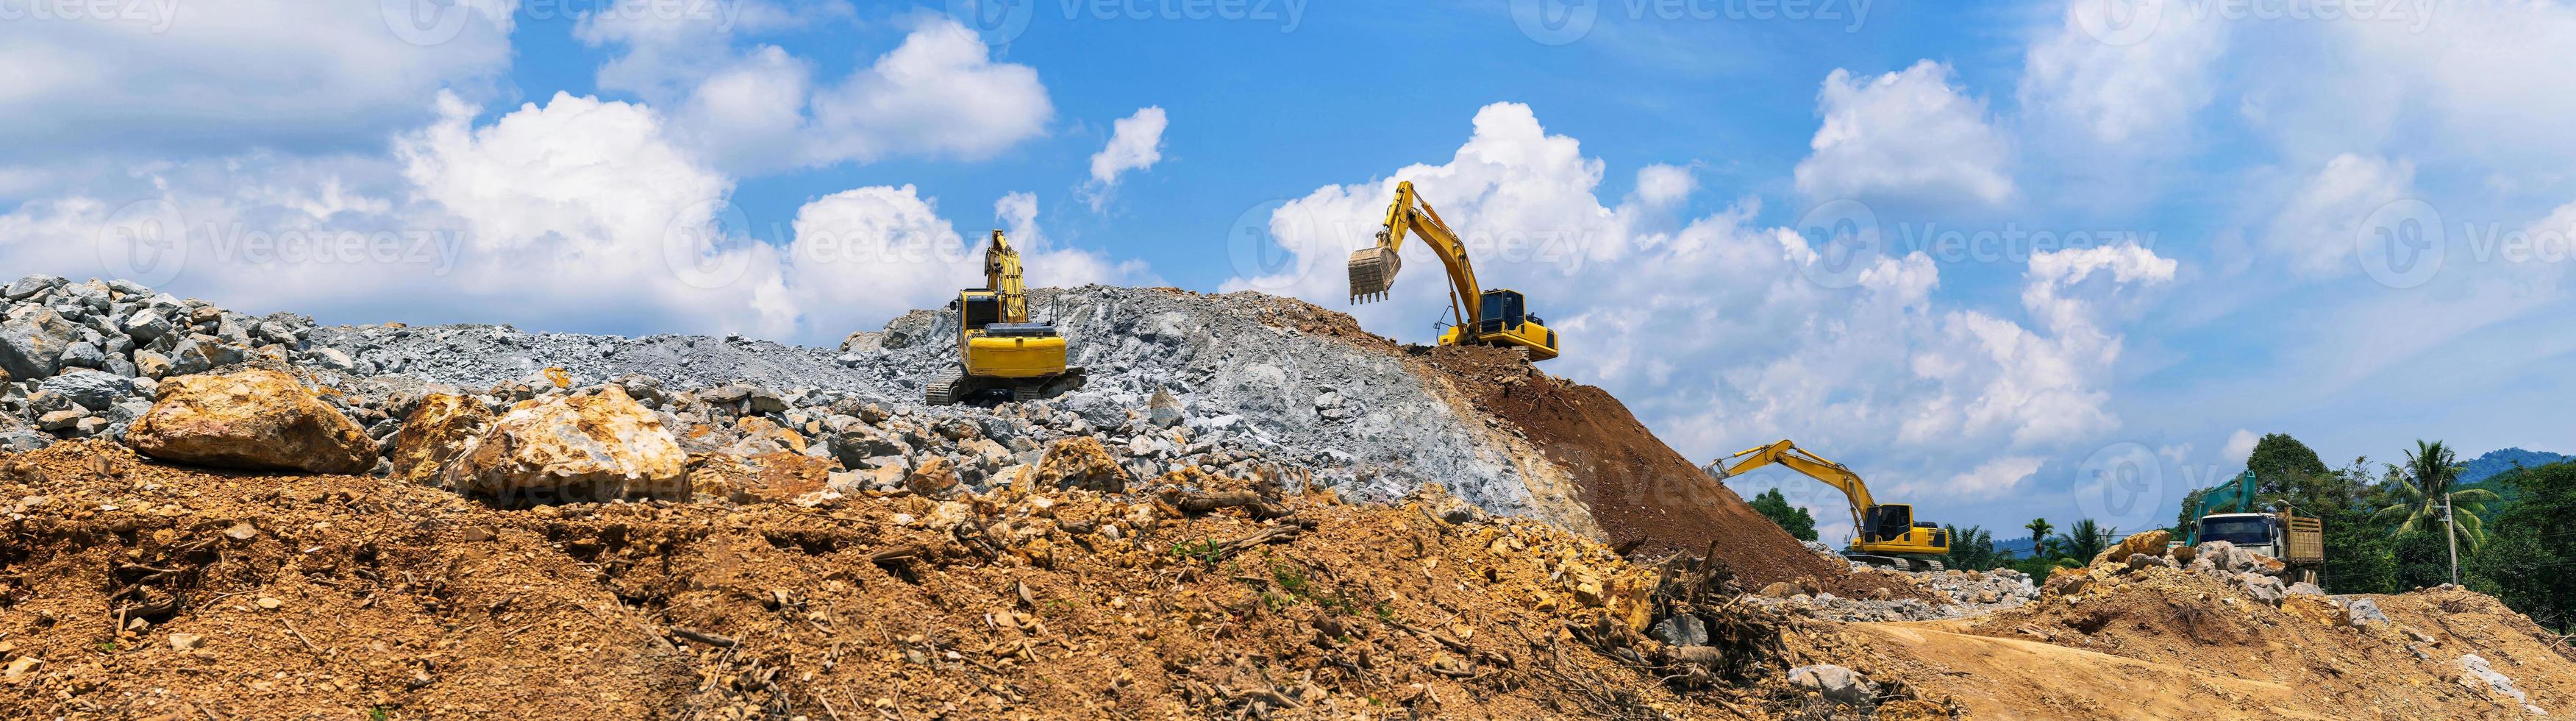 panorama, excavatrices et concasseur de pierres de l'exploitation minière sous un ciel bleu avec des nuages photo